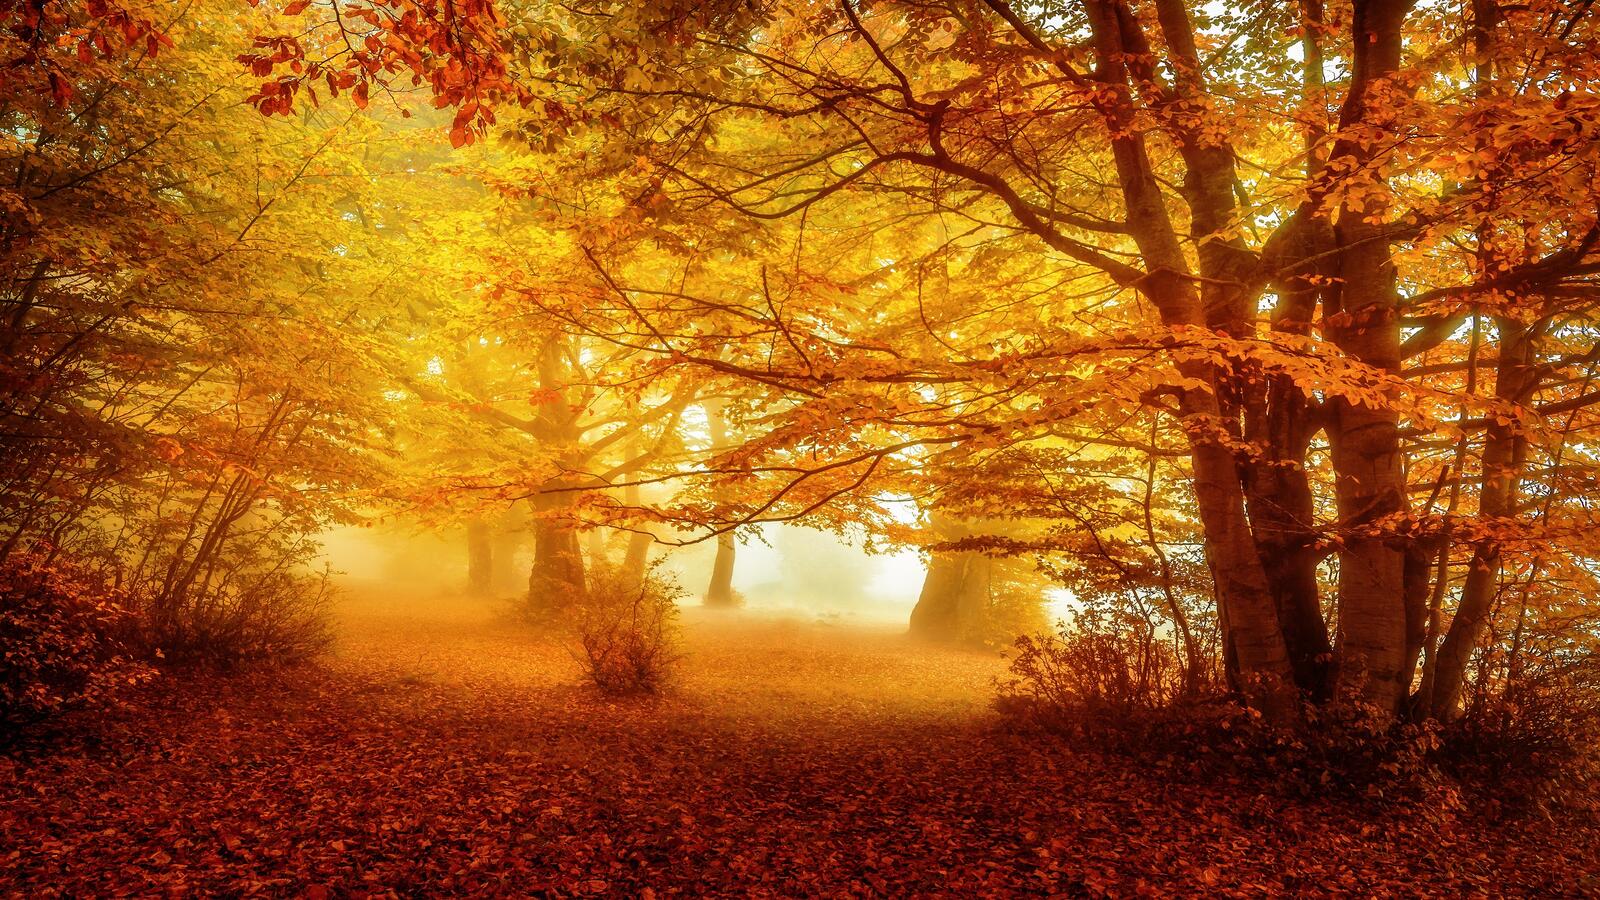 Бесплатное фото Лес, покрытый красивыми желтыми листьями